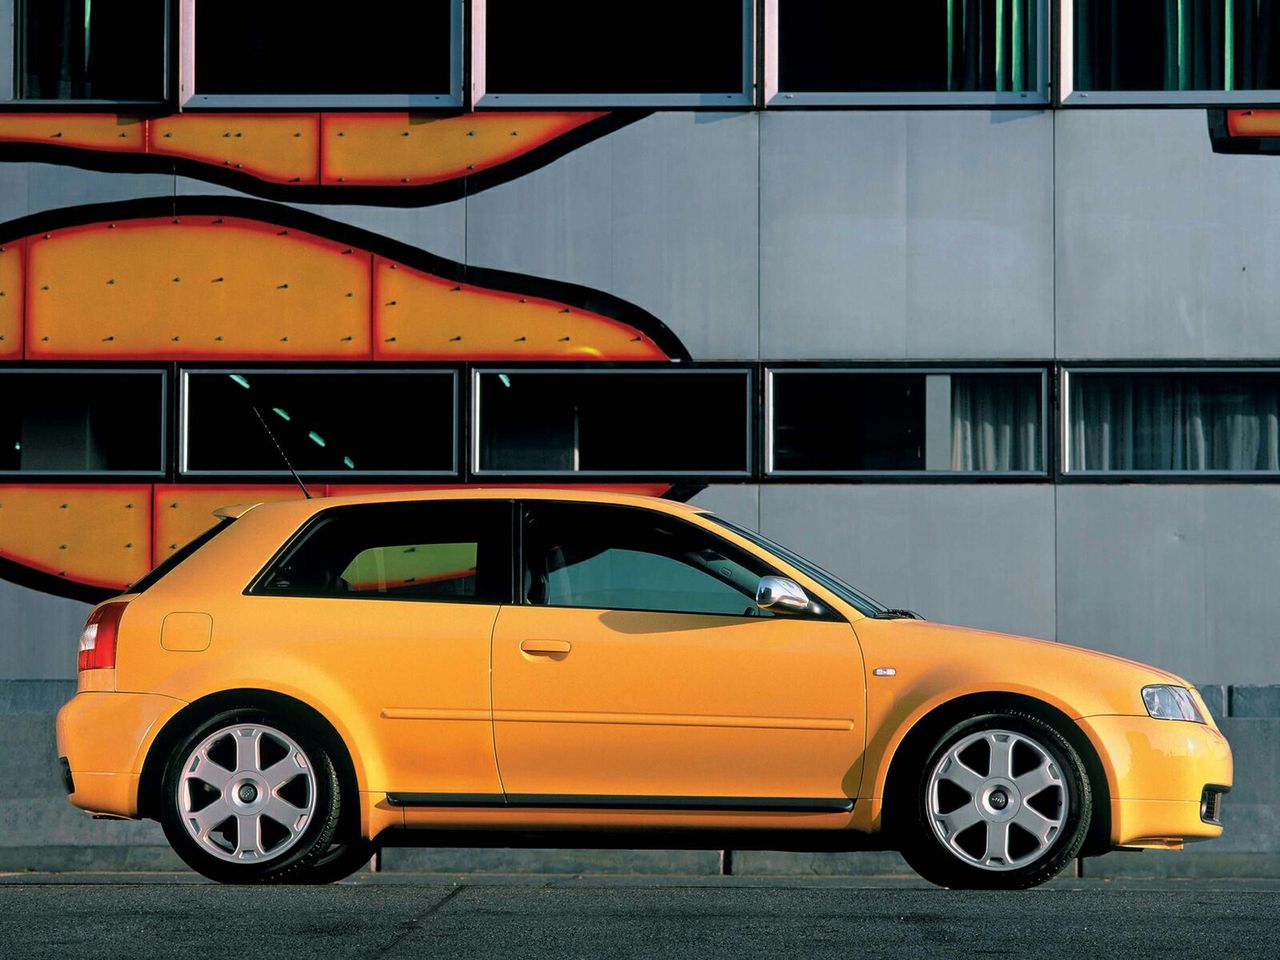 W okresie kiedy produkowano Audi S3, ten model był postrzegany jako auto sportowe, a nie jak typowy hot hatch.